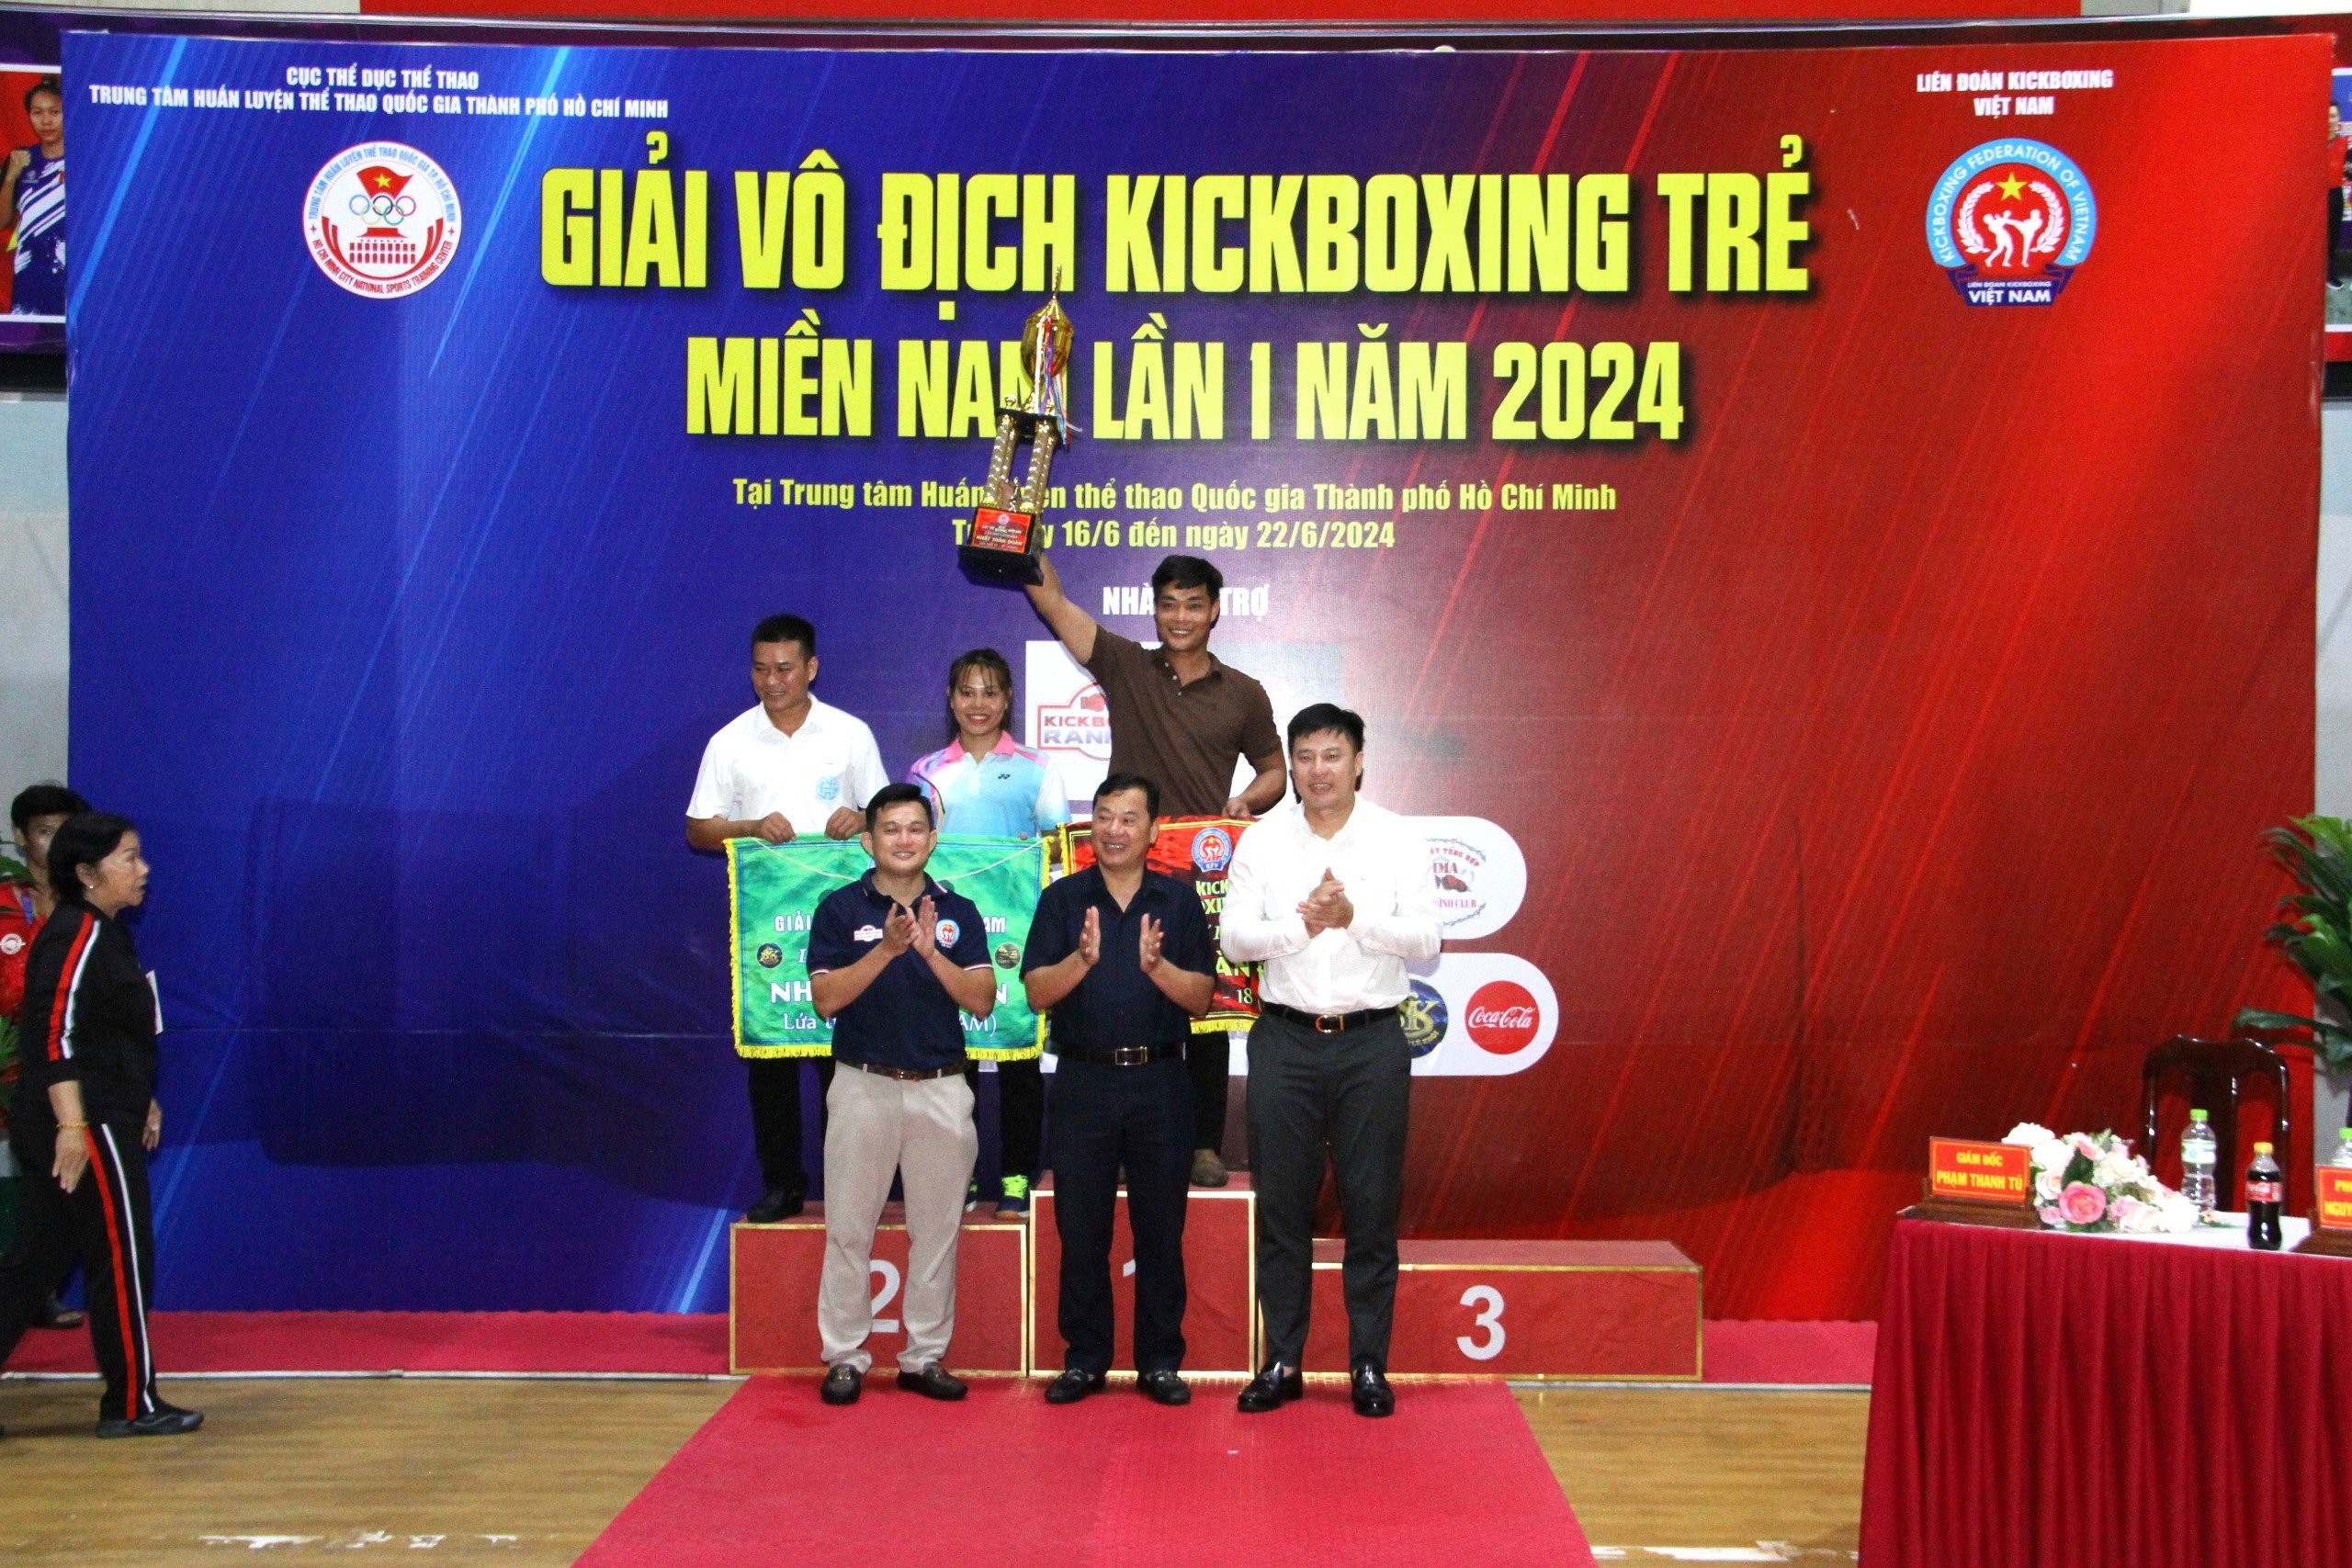 Phát hiện nhiều tài năng qua Giải vô địch trẻ Kickboxing miền Nam